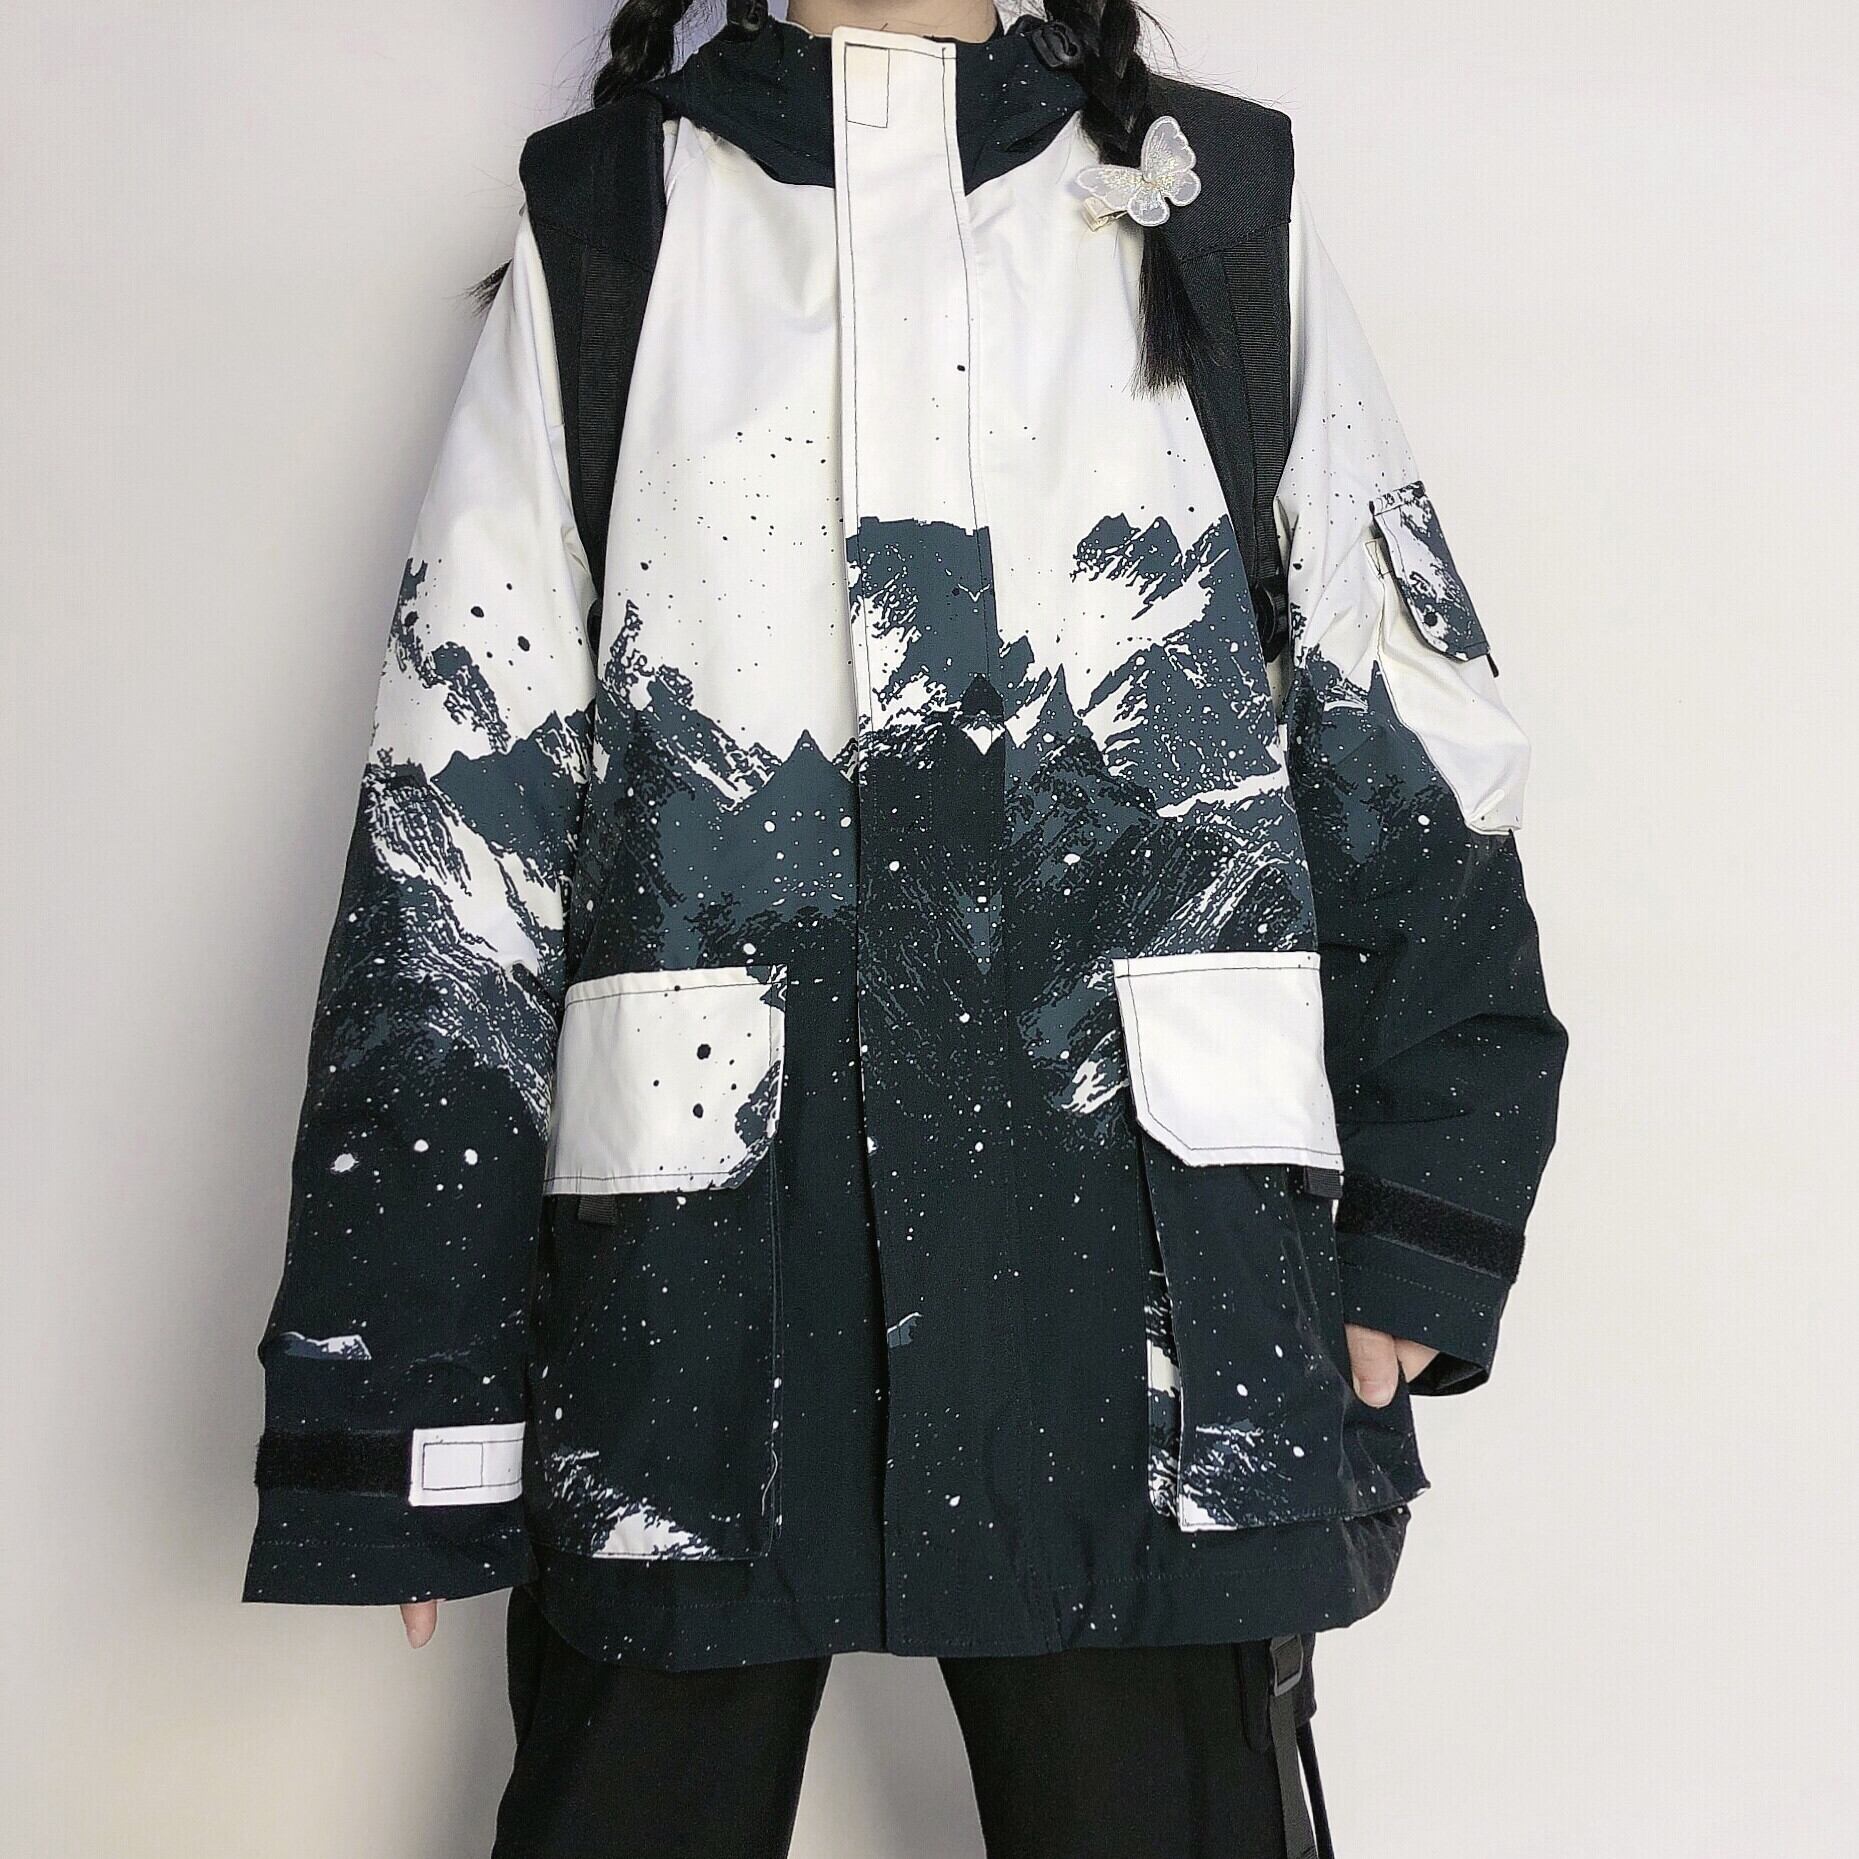 【アウター】男性と女性のための雪の山のデザインとフード付きのルーズウインドブレーカージャケット 2109191413J